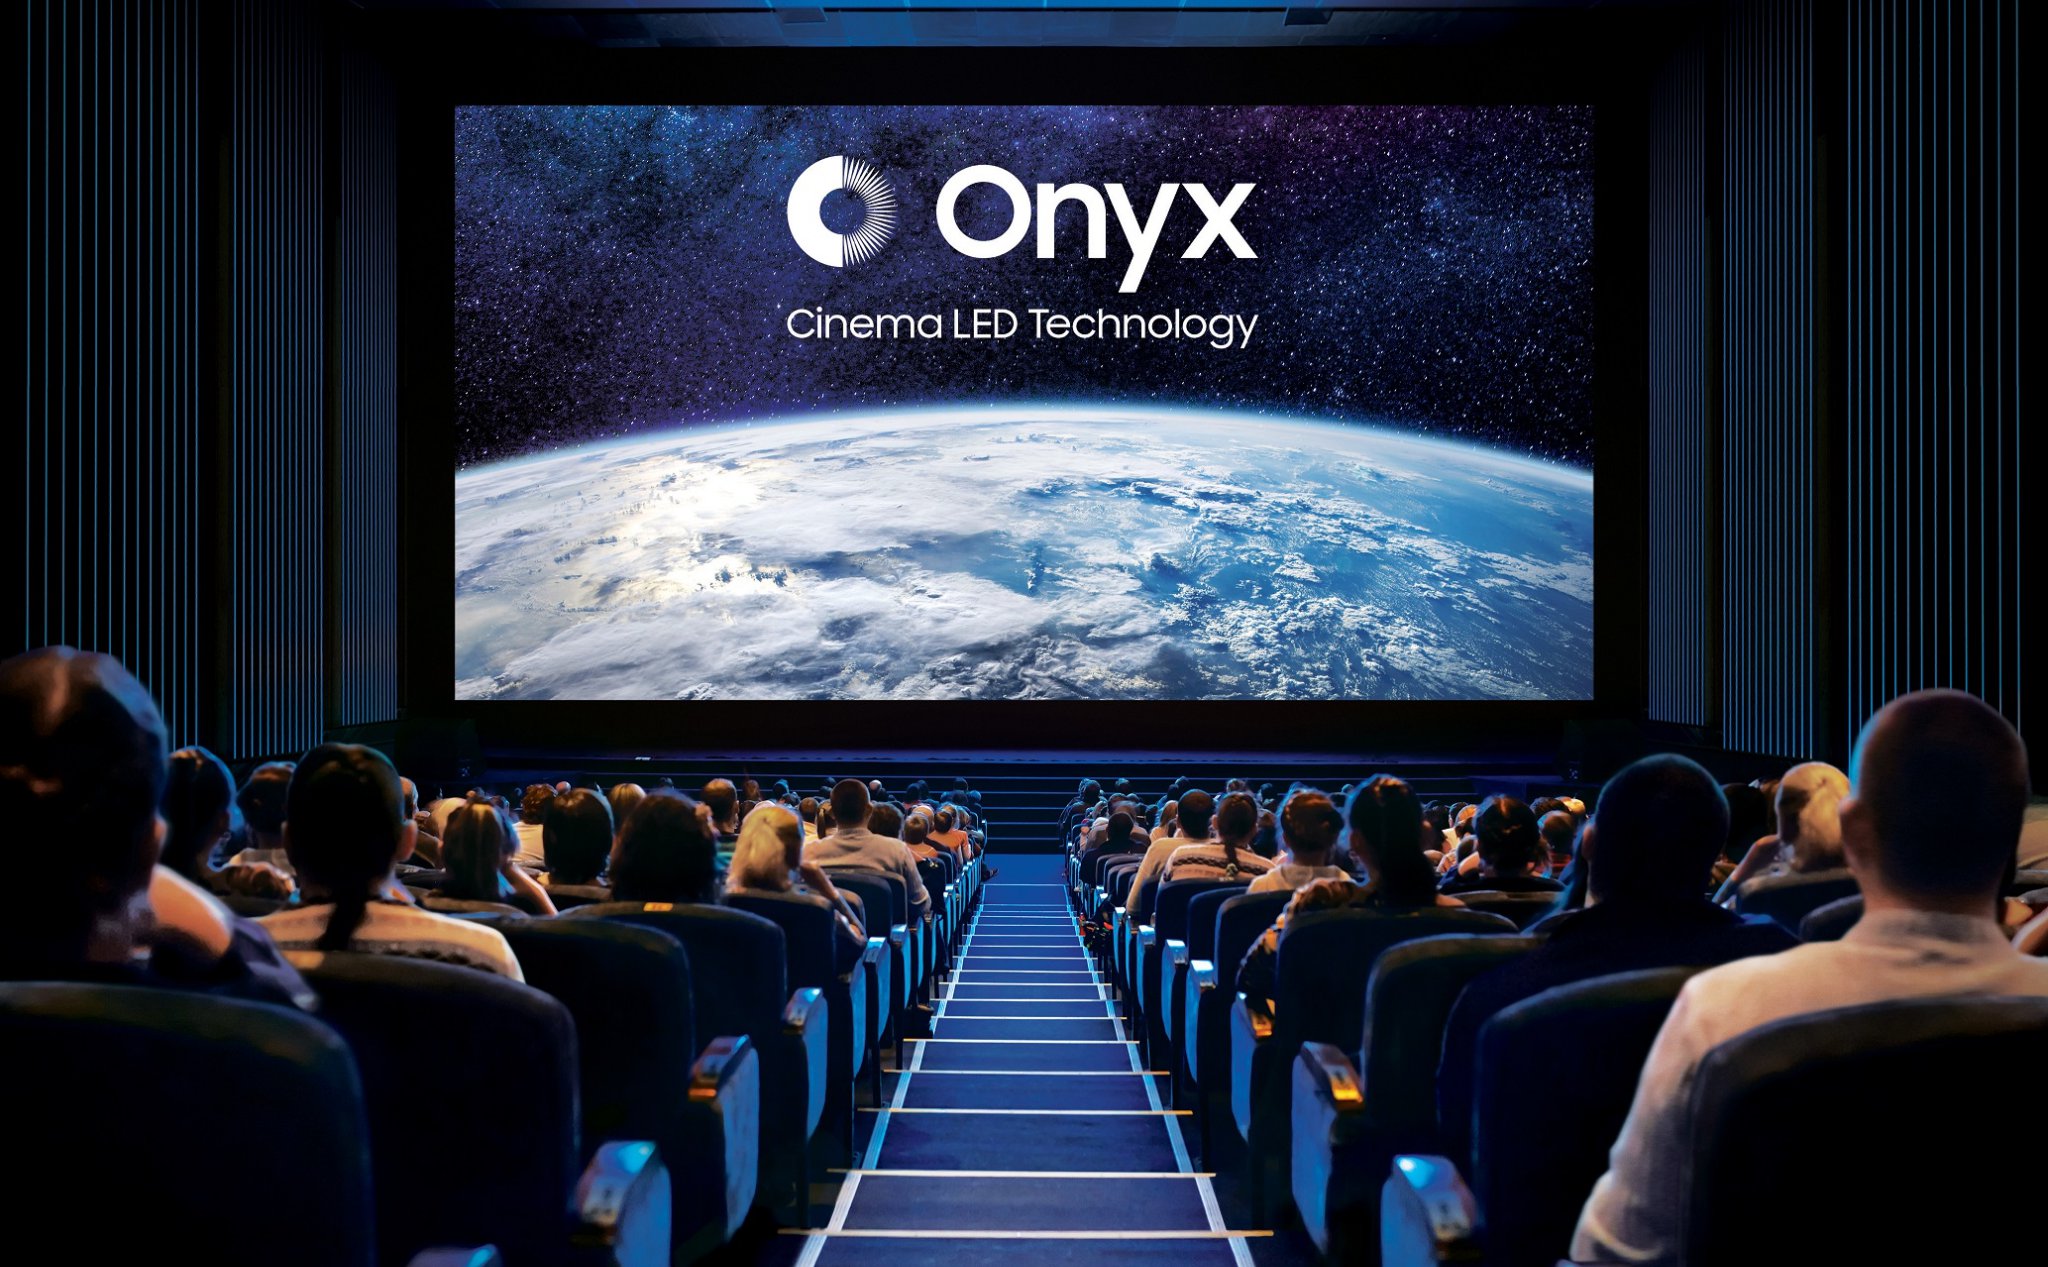 [QC] Samsung Onyx Cinama LED: chất lượng của một chiếc TV 4K cao cấp khổng lồ